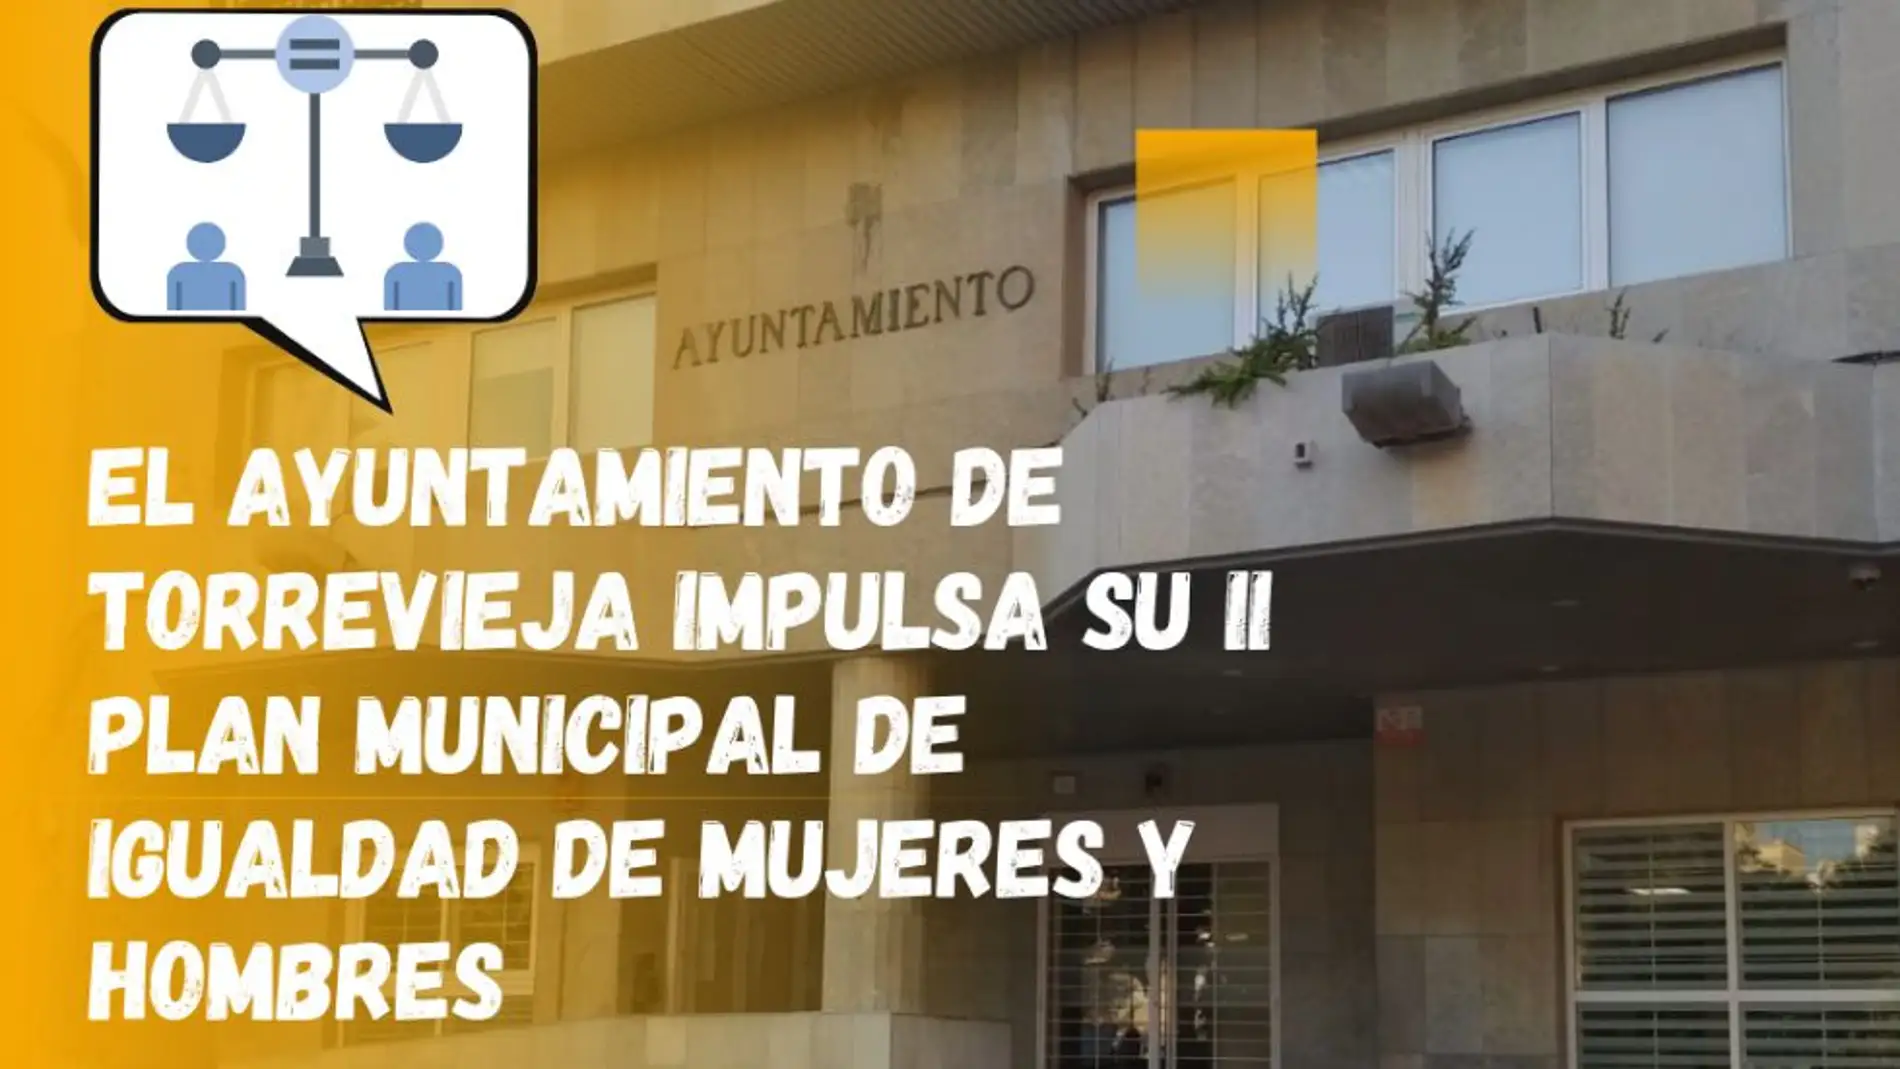 El Ayuntamiento impulsa su II plan municipal de igualdad de mujeres y hombres 